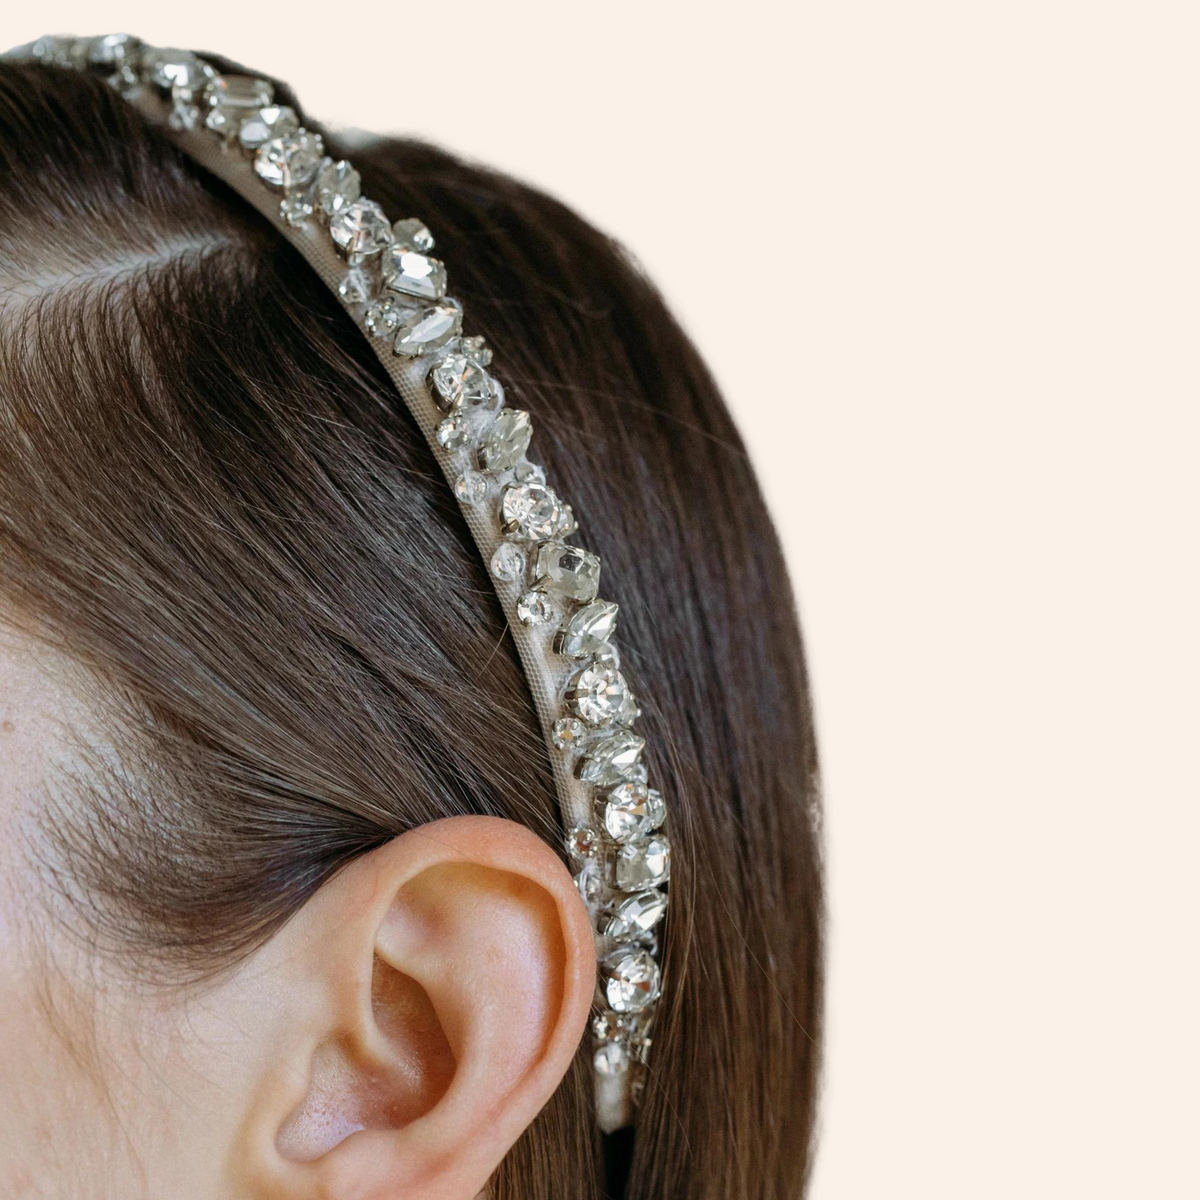 Fiocco - Thin bridal headband with crystals